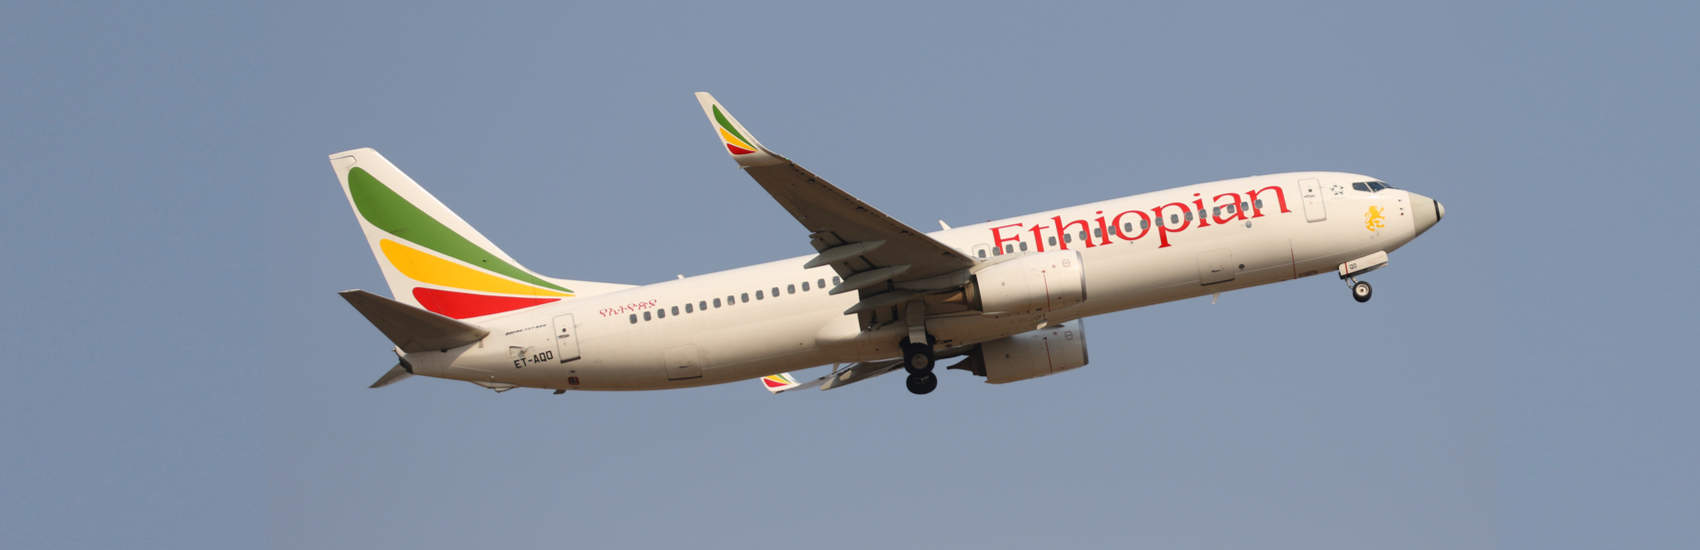 Ethiopian Airlines: ‘No survivors’